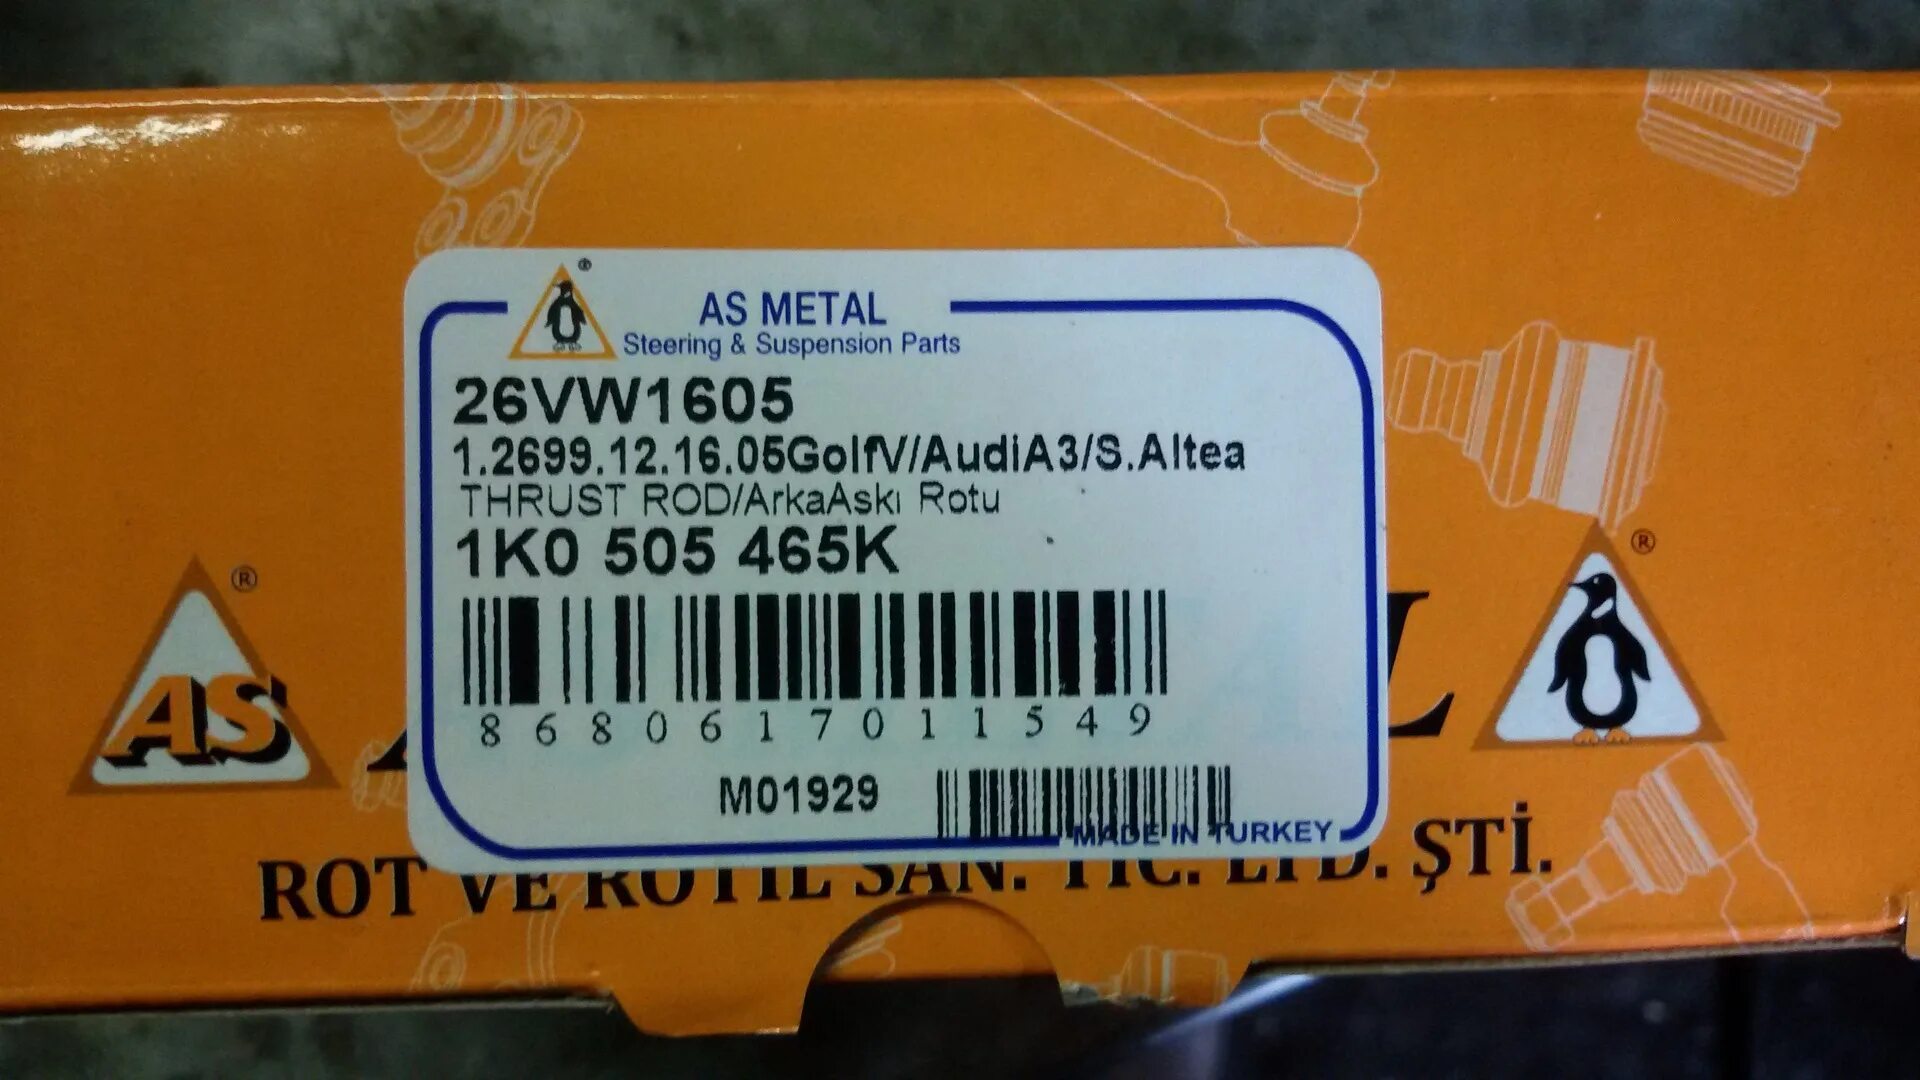 As metal отзывы. As Metal 26vw1605. 26vw1605. As Metal 10vw1605. As Metal 26vw1600.